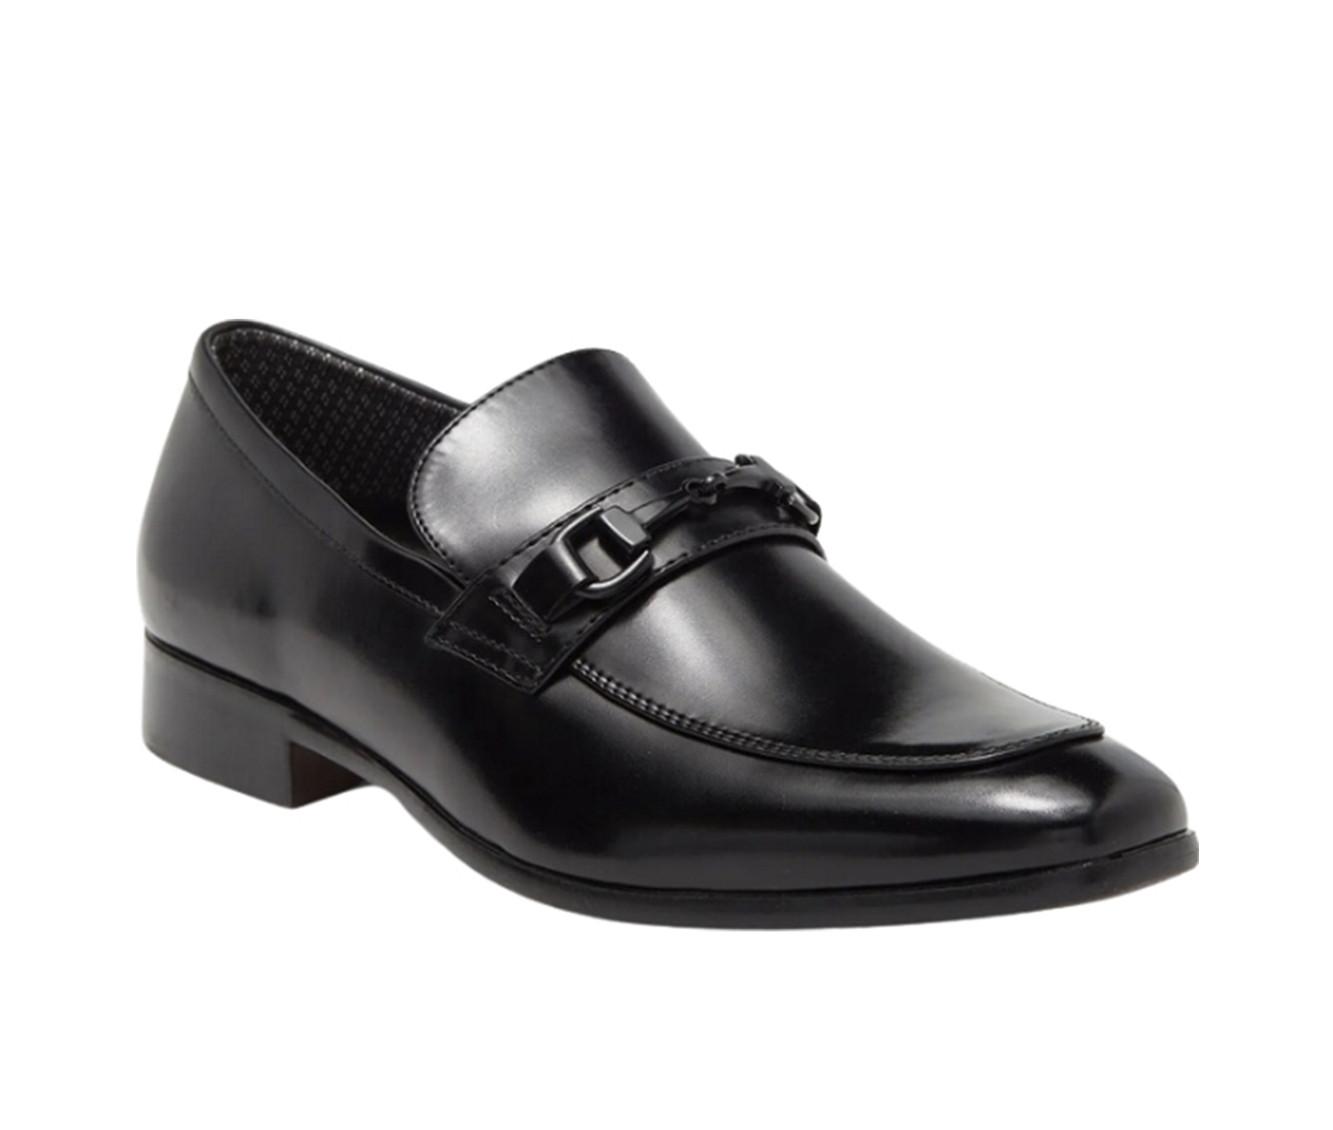 Men's RUSH Gordon Rush Slip On Bit Loafer Dress Shoes